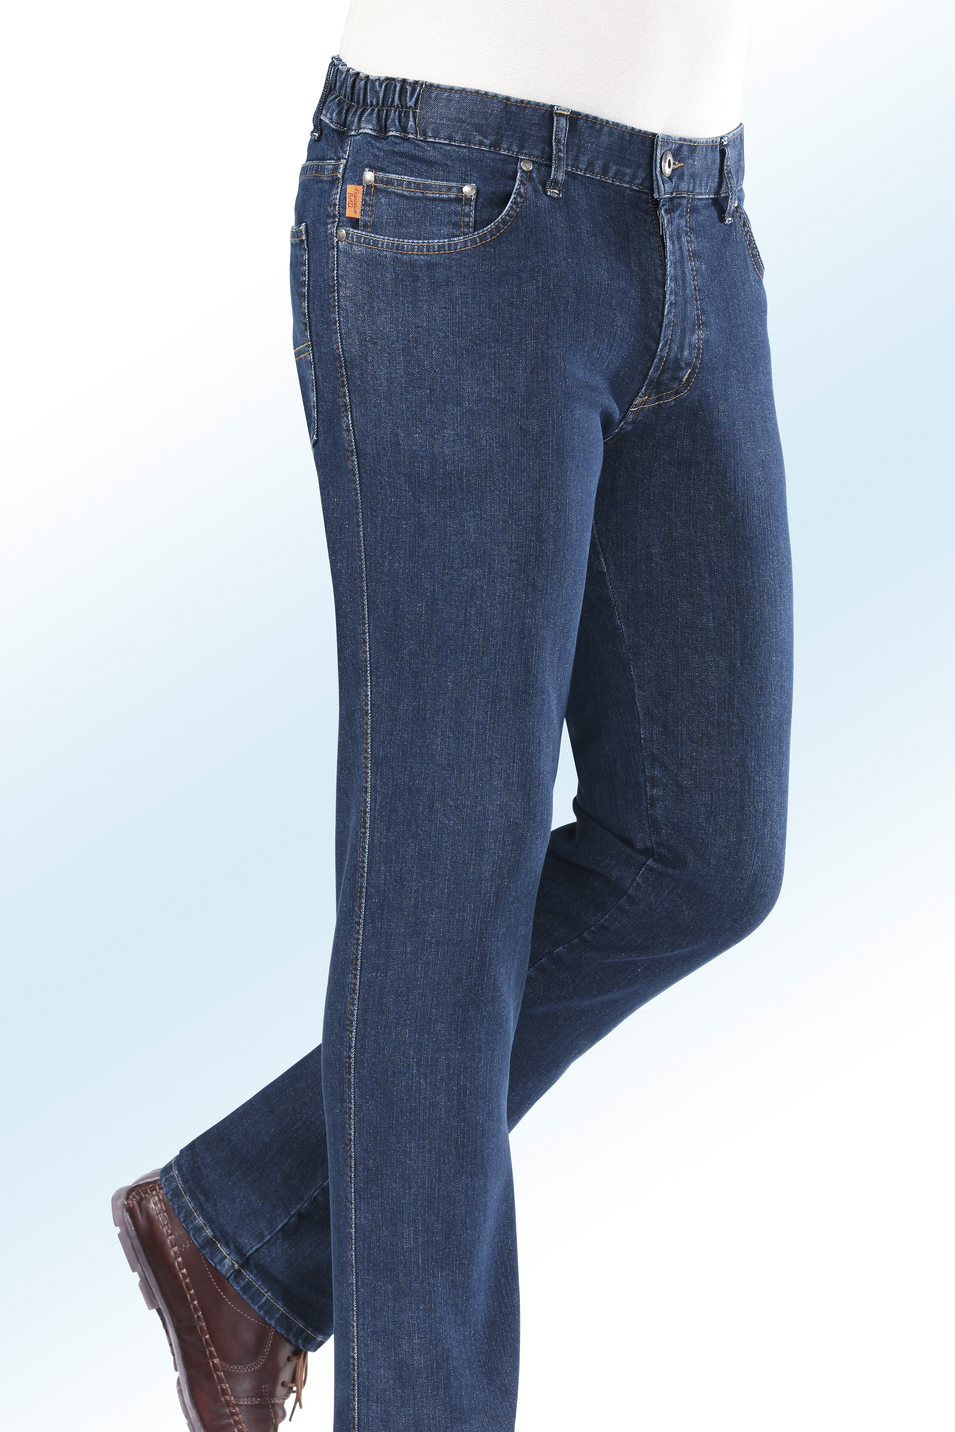 "Francesco Botti"-Jeans mit Dehnbundeinsätzen in 3 Farben, Jeansblau, Größe 32 von FRANCESCO BOTTI